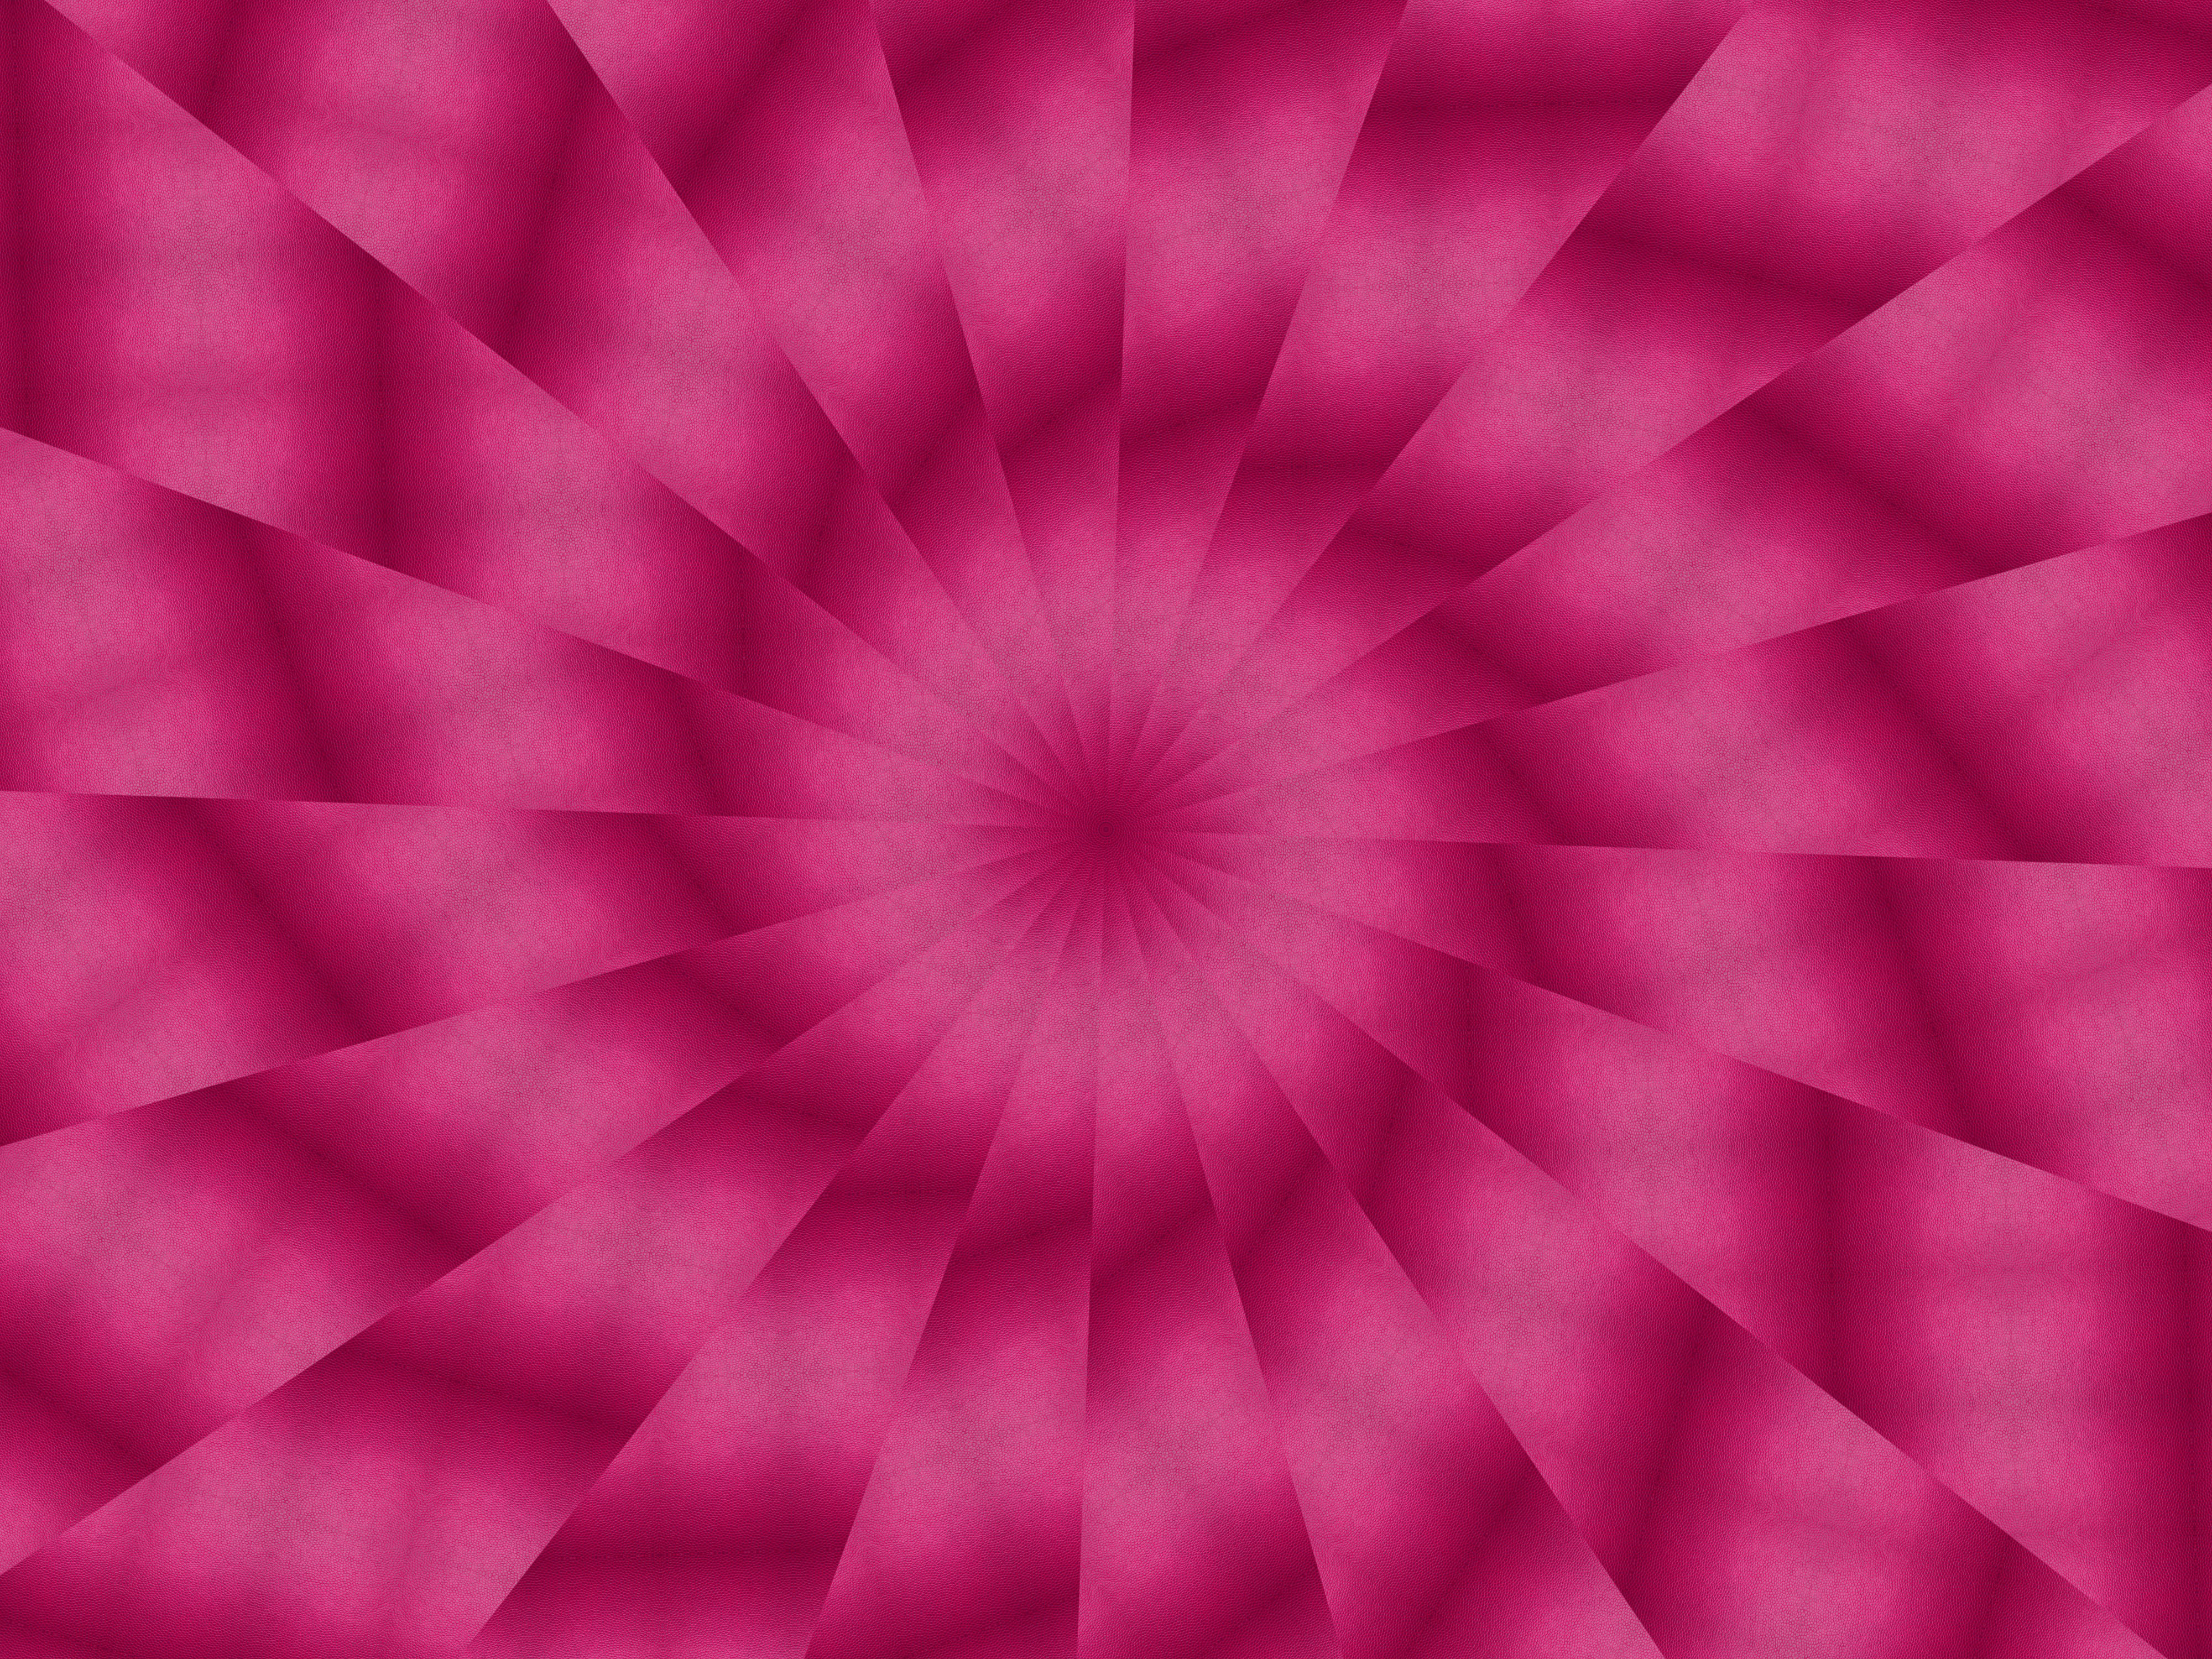 Abstract Digital Art Kaleidoscope Pink 4000x3000